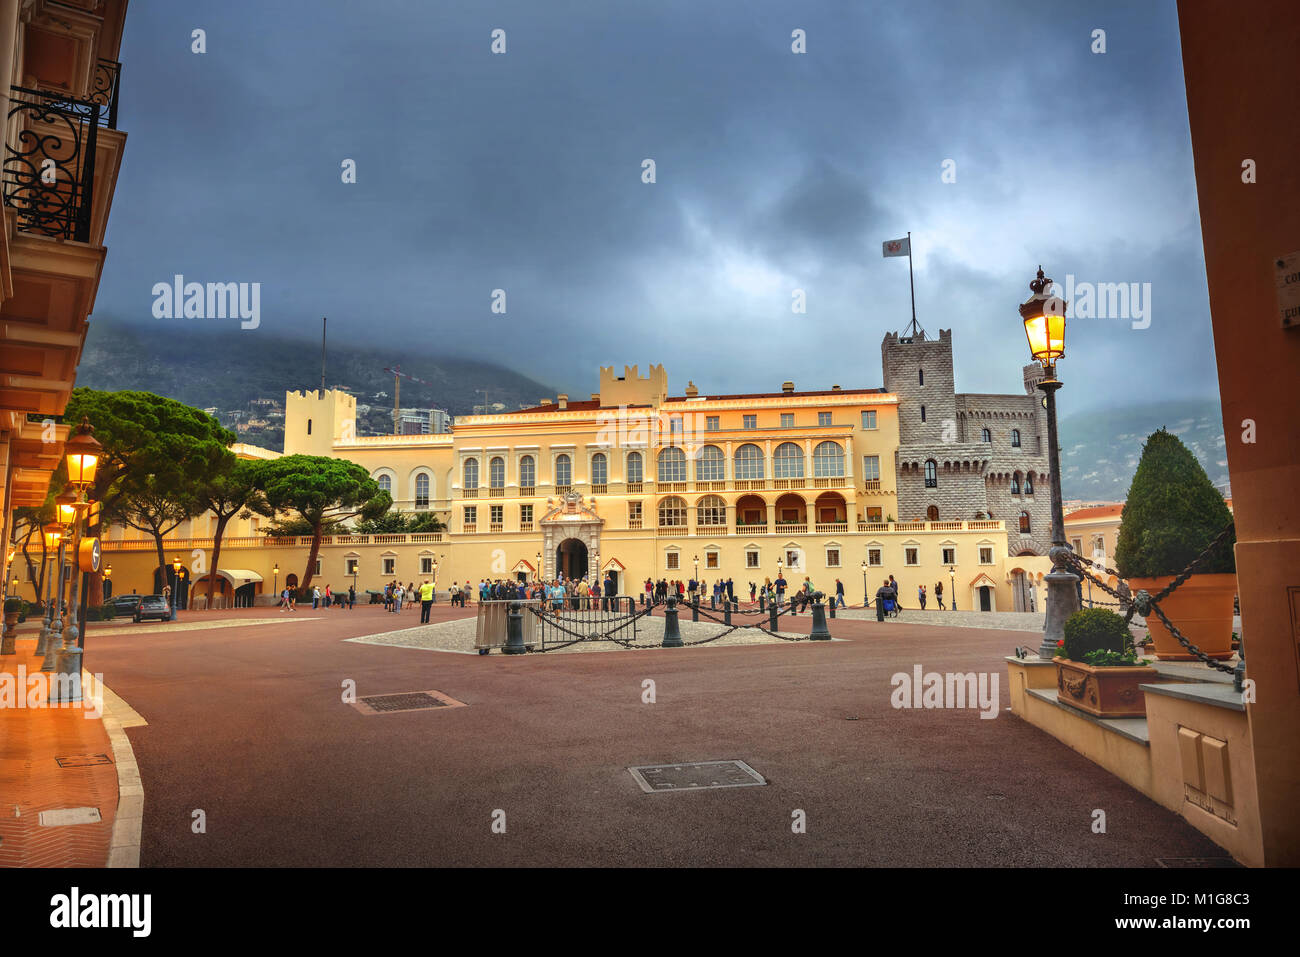 Vista del palacio del príncipe es residencia oficial del Príncipe de Mónaco. Mónaco Foto de stock